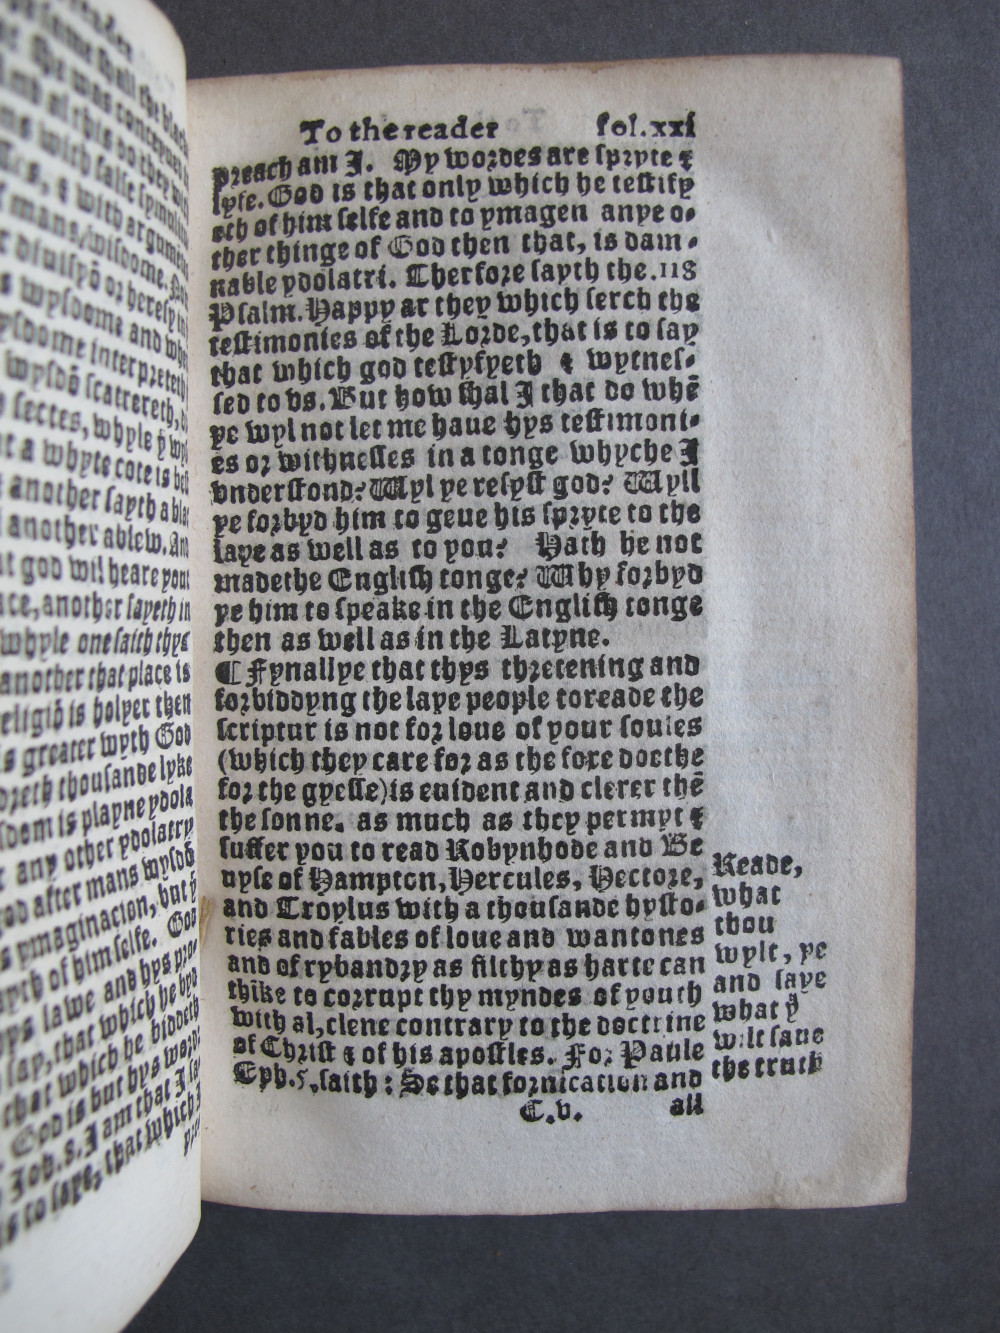 1 Folio C5 recto